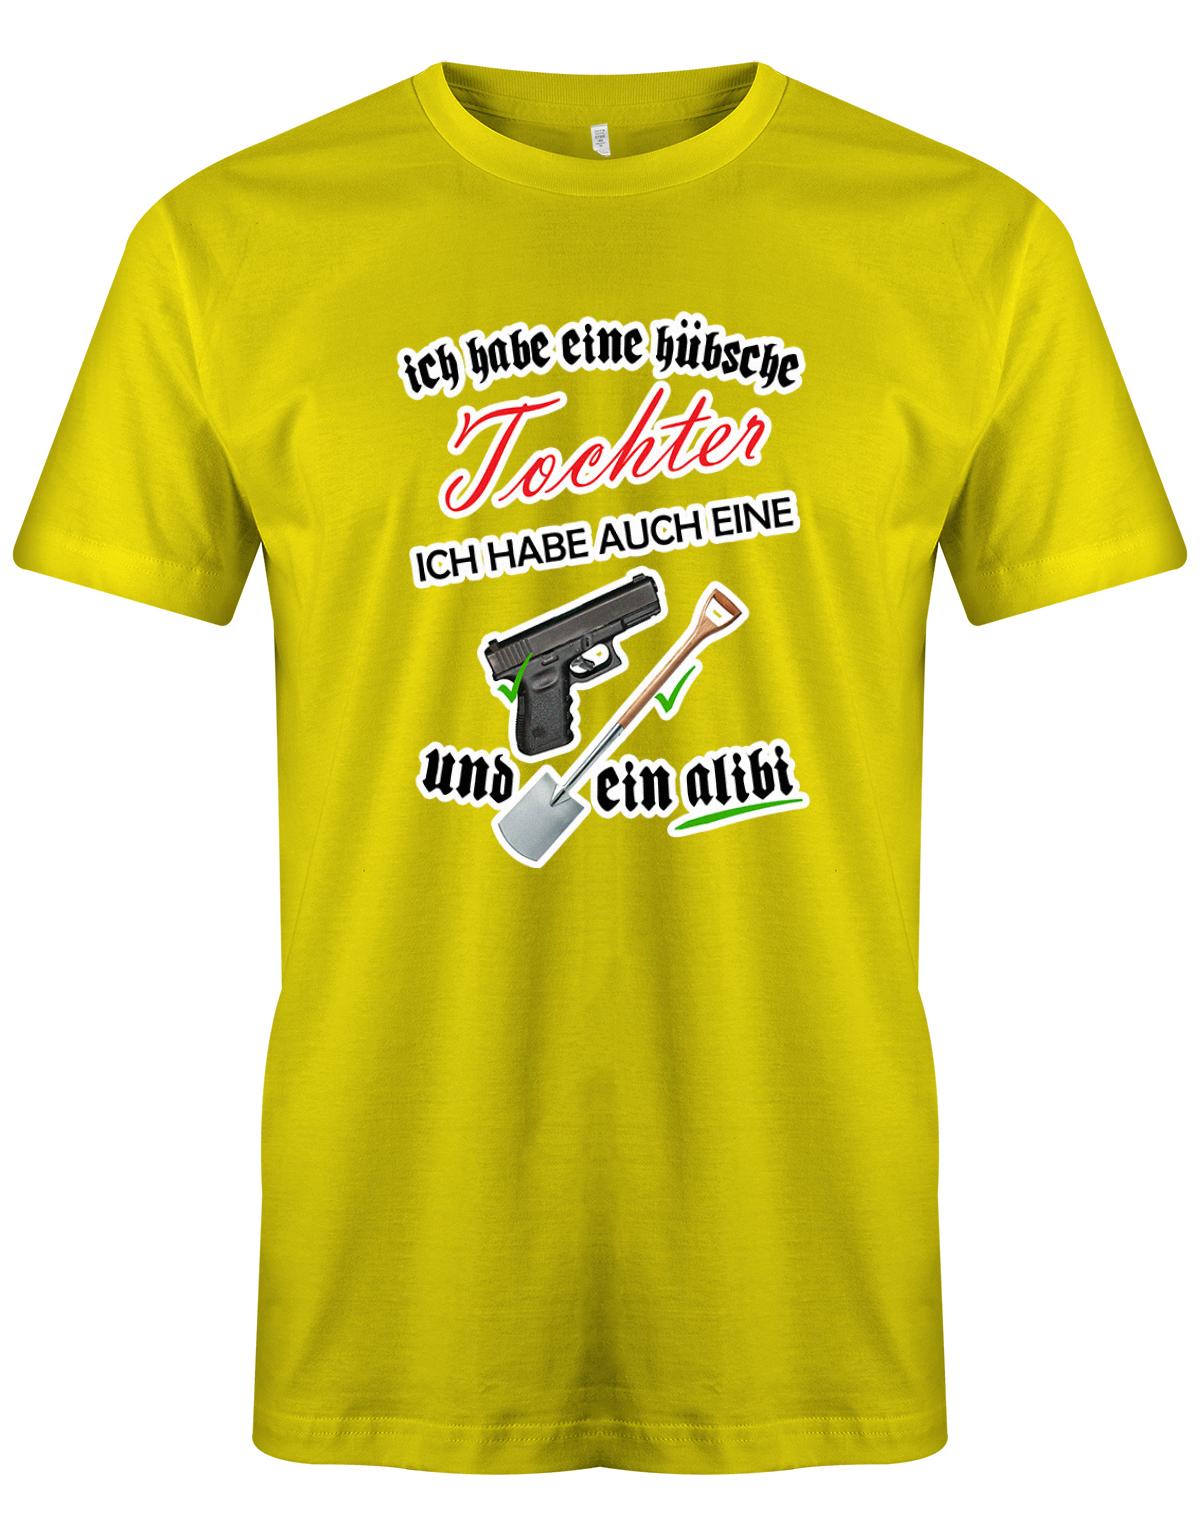 Ich-habe-eine-h-bsche-tochter-ich-habe-auch-eine-Waffe-SChaufel-und-Alibi-Herren-Shirt-gelb